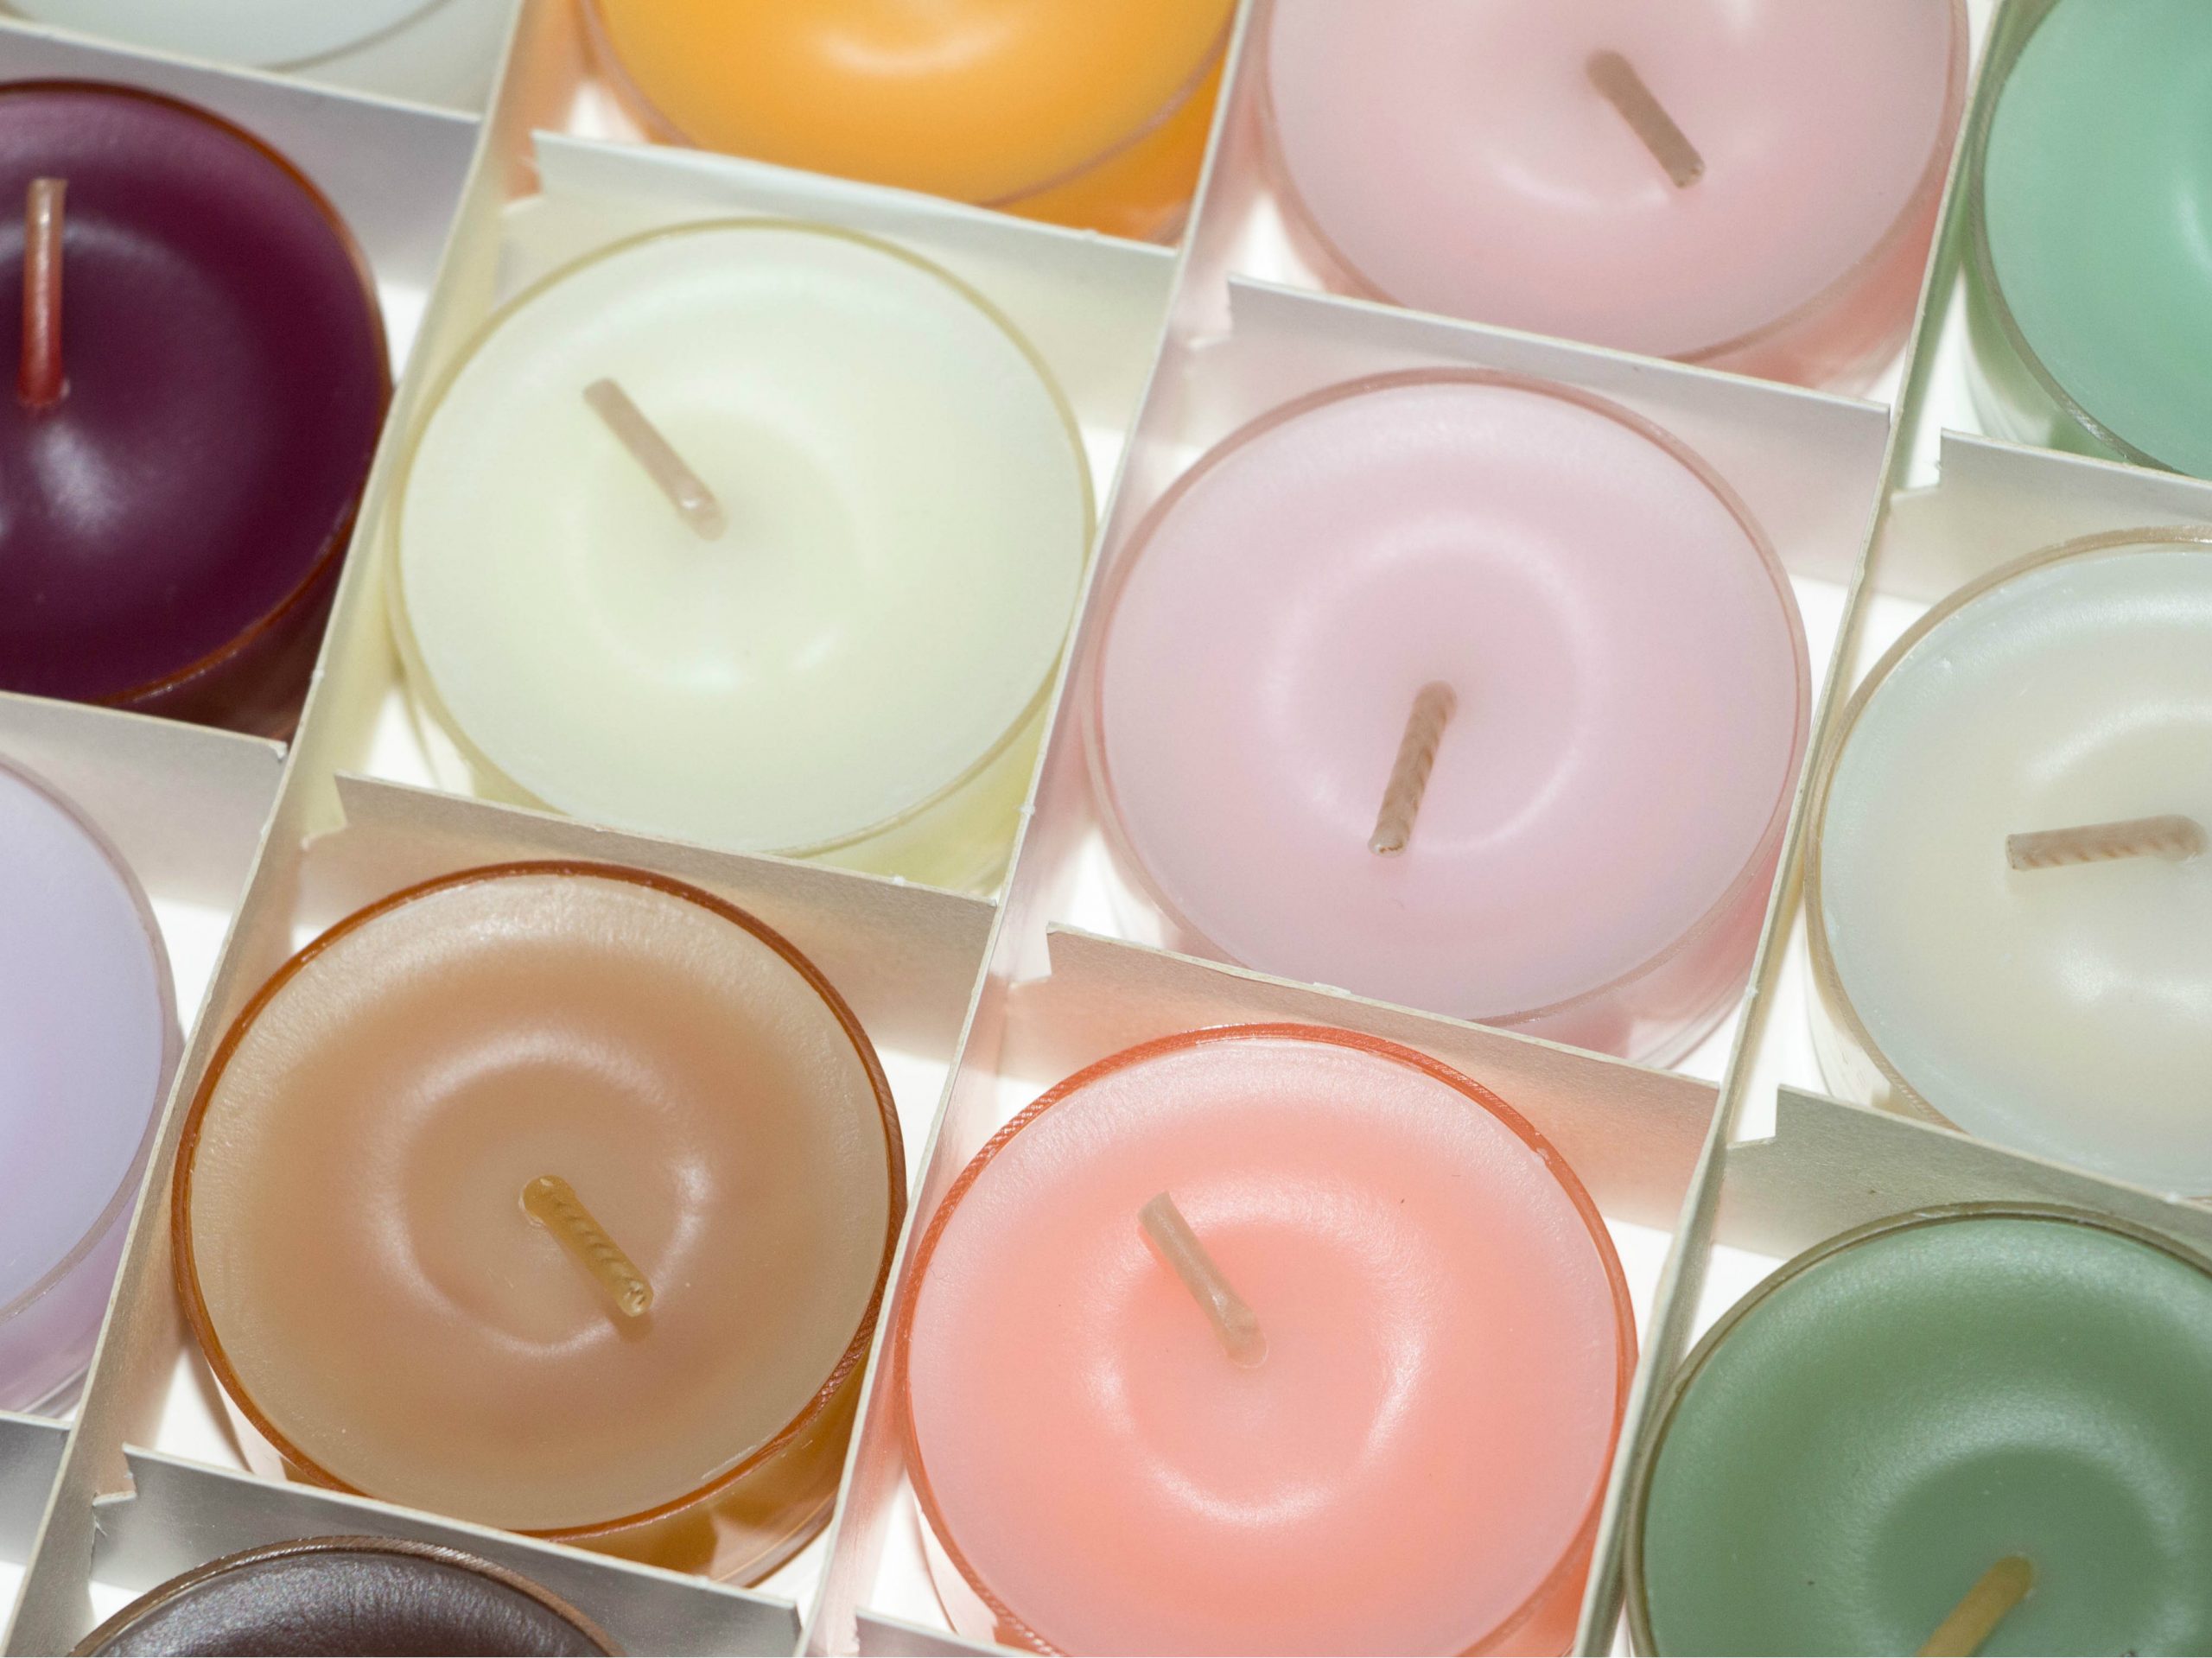 Sabia que as cores das velas têm poder terapêutico?